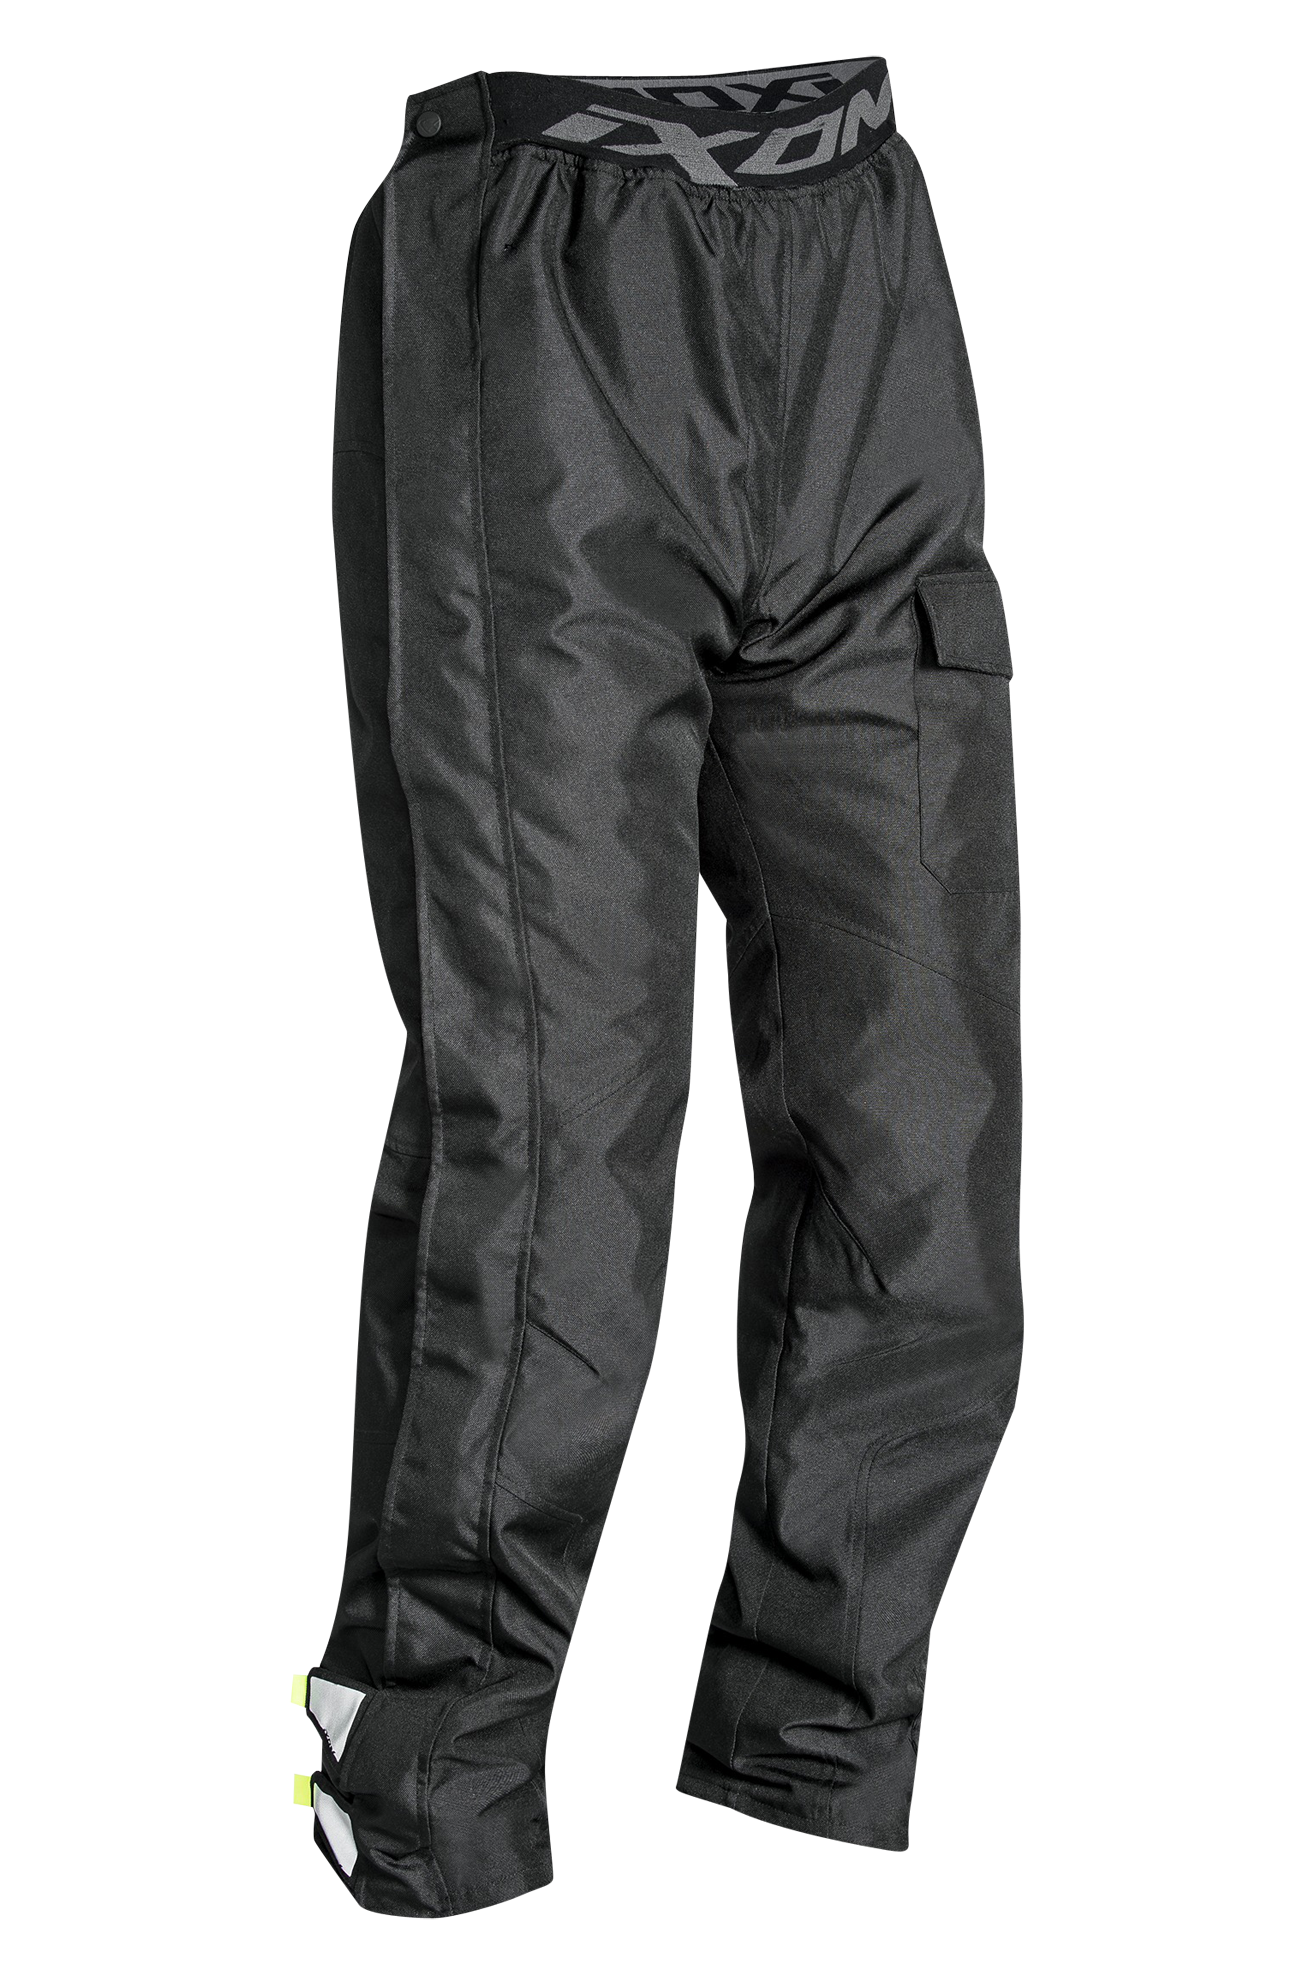 Ixon Pantaloni Antipioggia  Sentinel Nero-Giallo Brillante